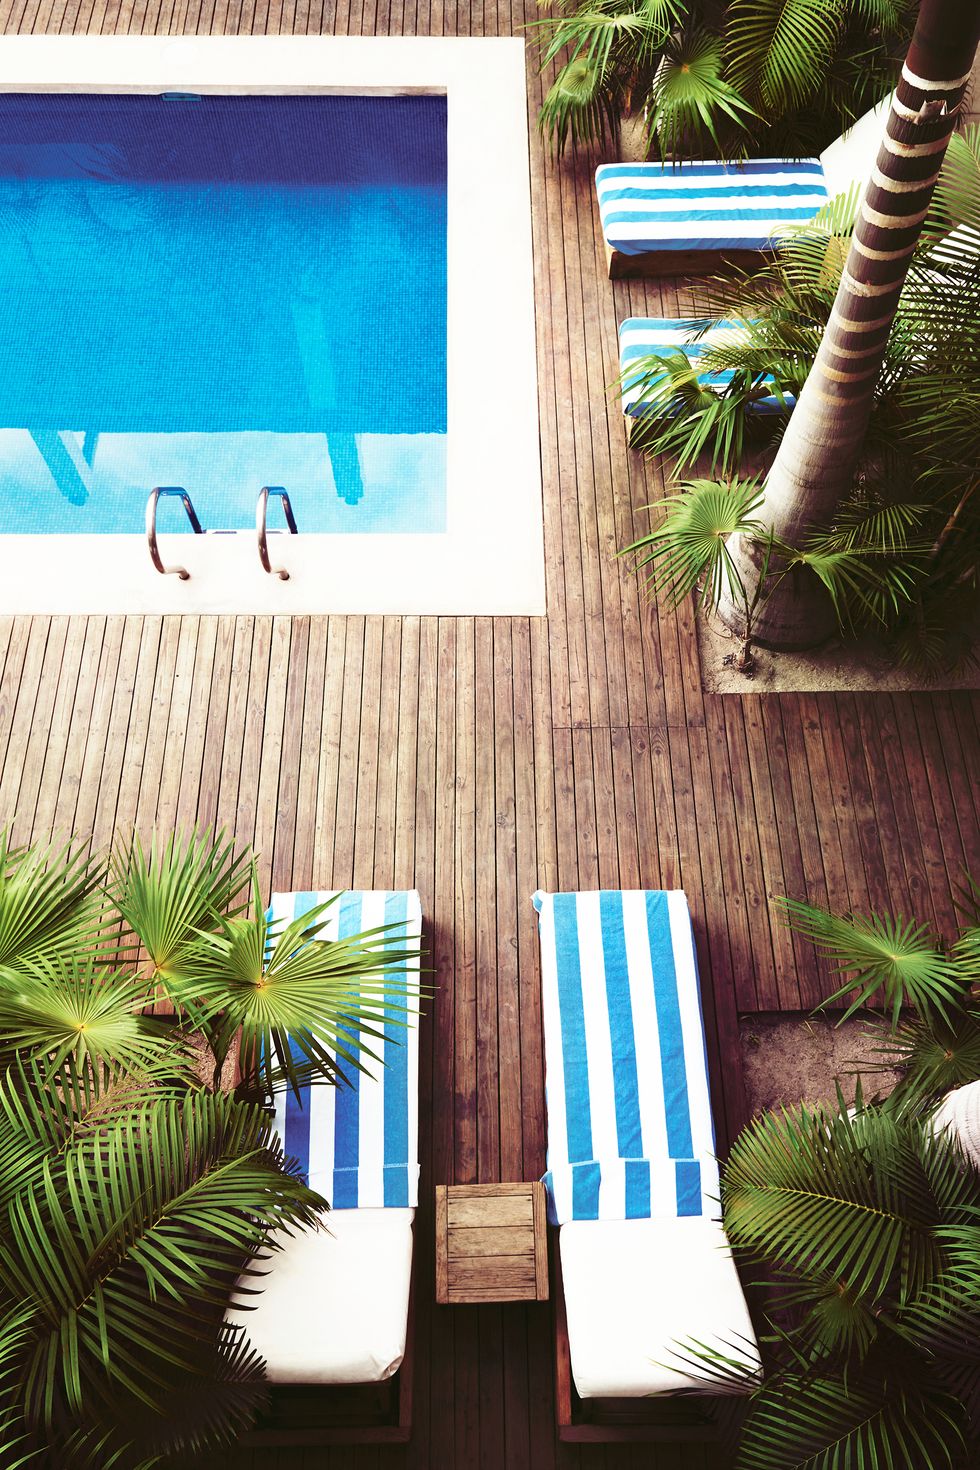 Hình ảnh bể bơi nhìn từ trên cao xuống với nước xanh ngắt, ván sàn gỗ lát xung quanh, ghế tắm nắng kẻ sọc xanh trắng